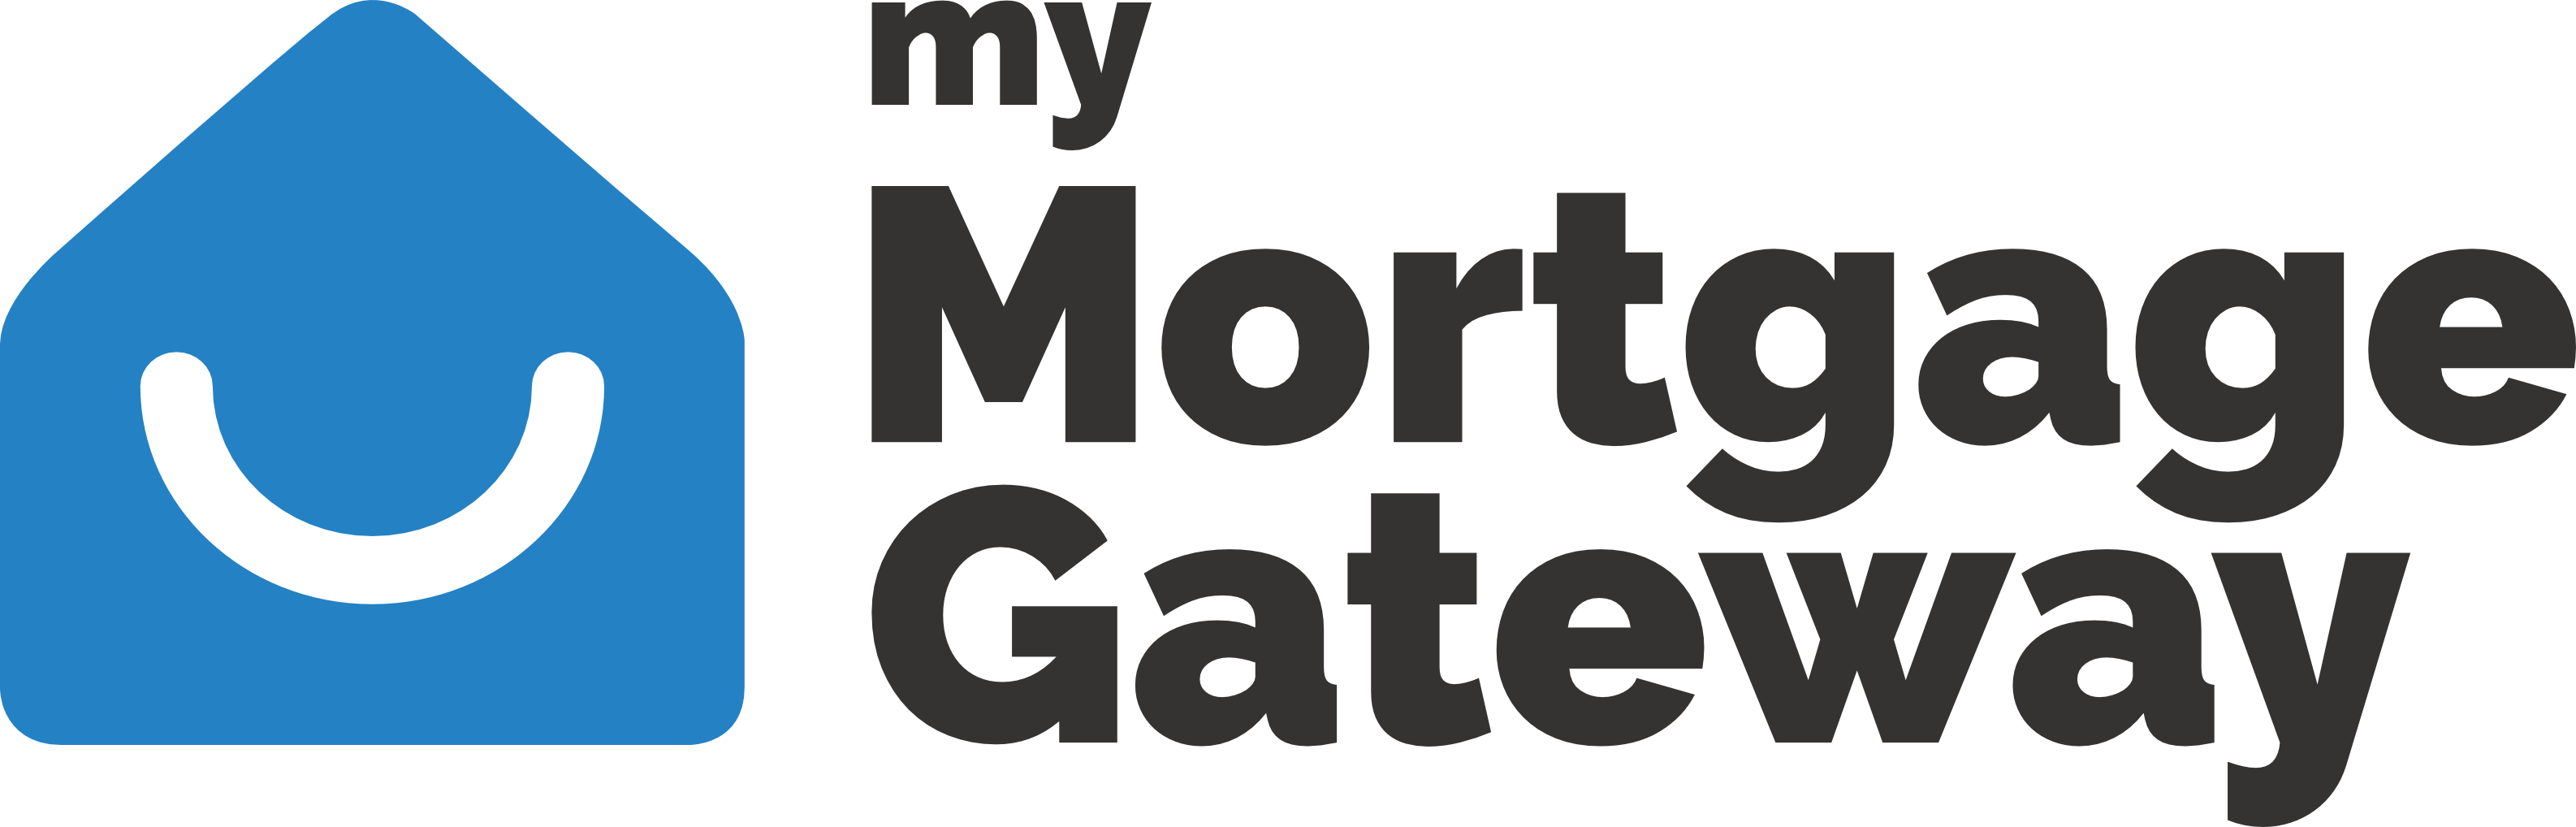 My Mortgage Gateway